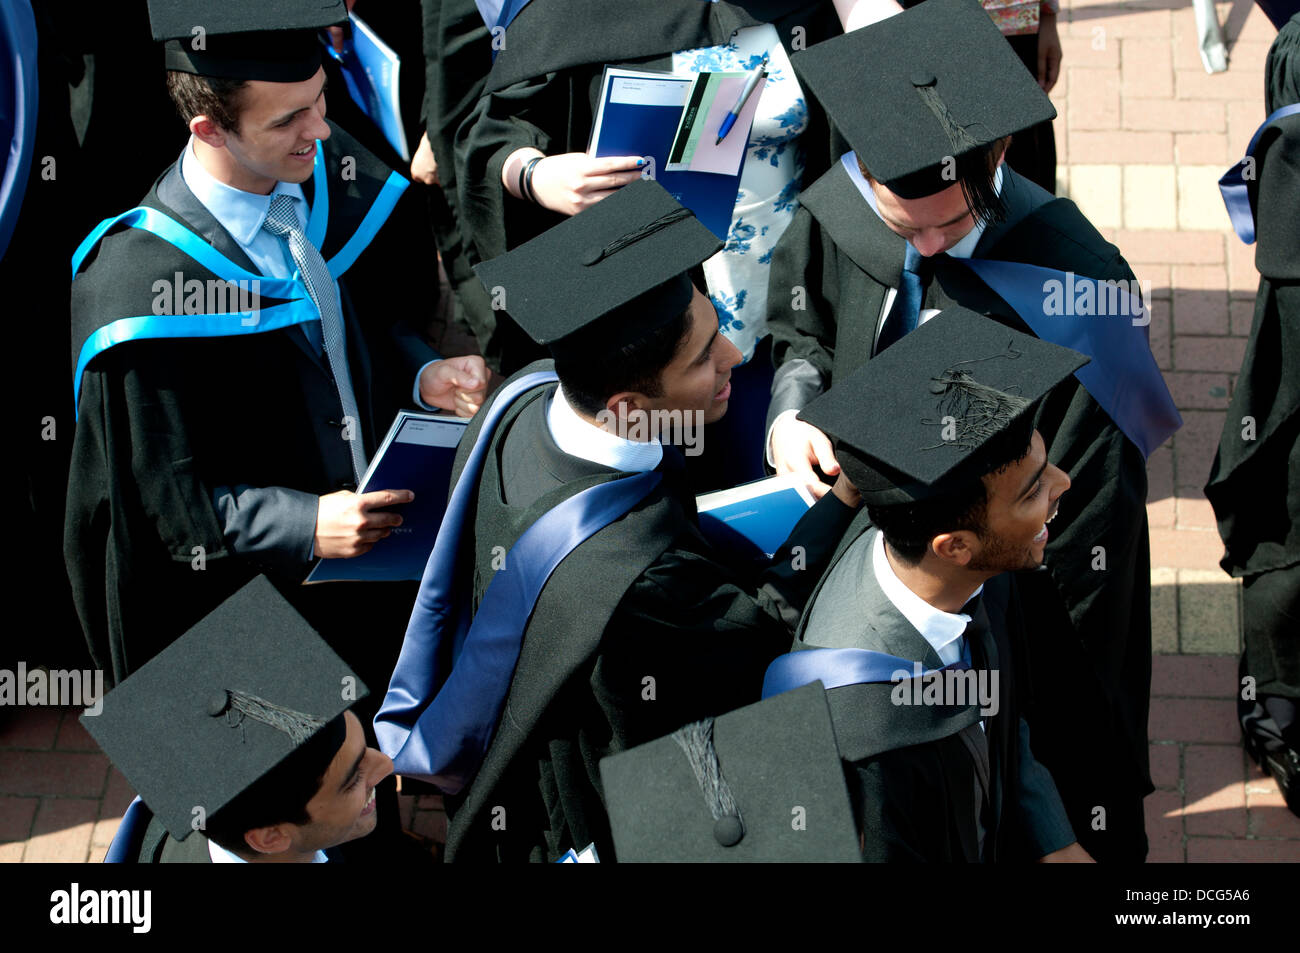 Warwick University graduation day. Stock Photo